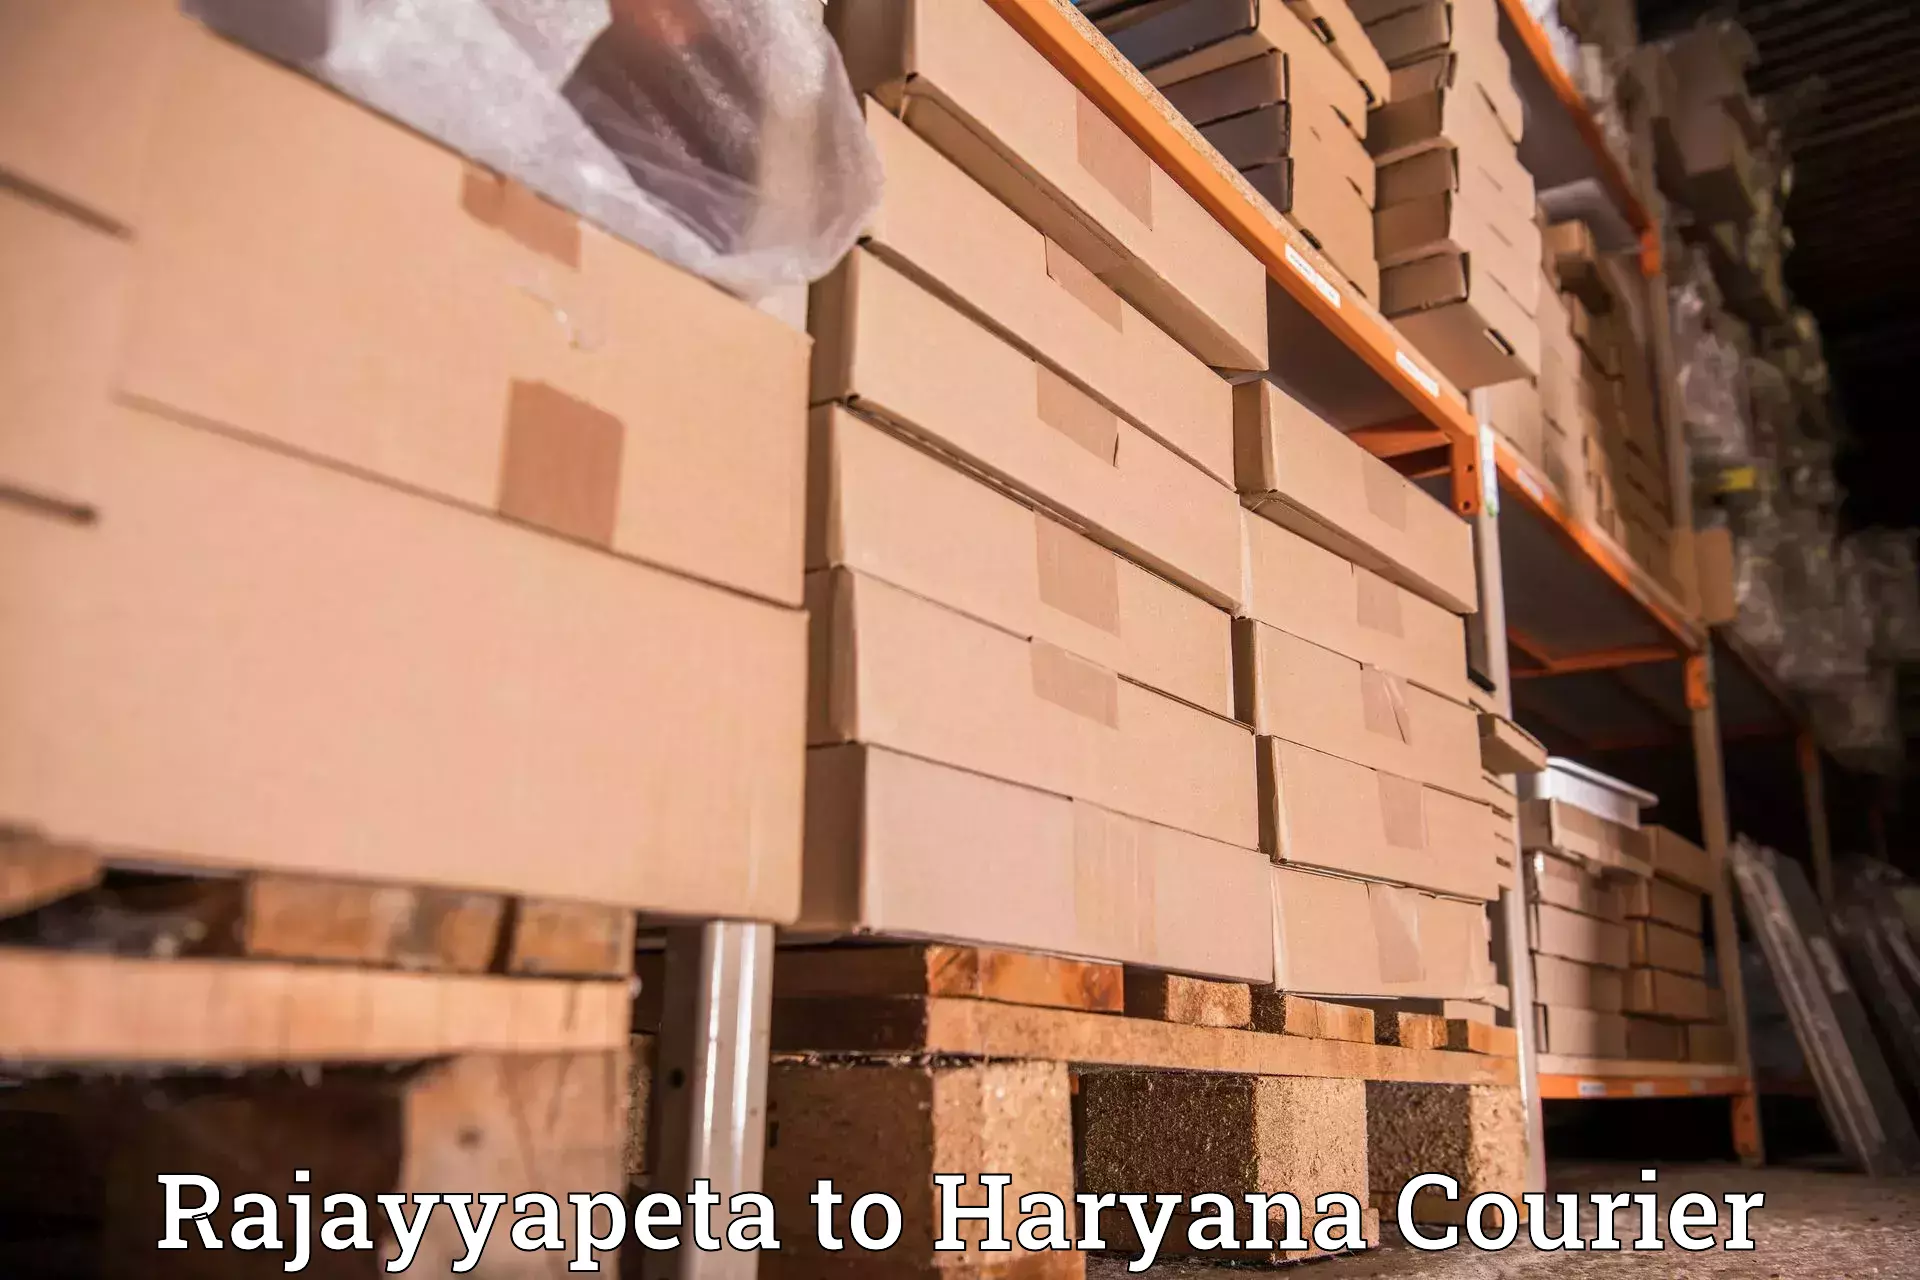 Multi-carrier shipping Rajayyapeta to IIIT Sonepat